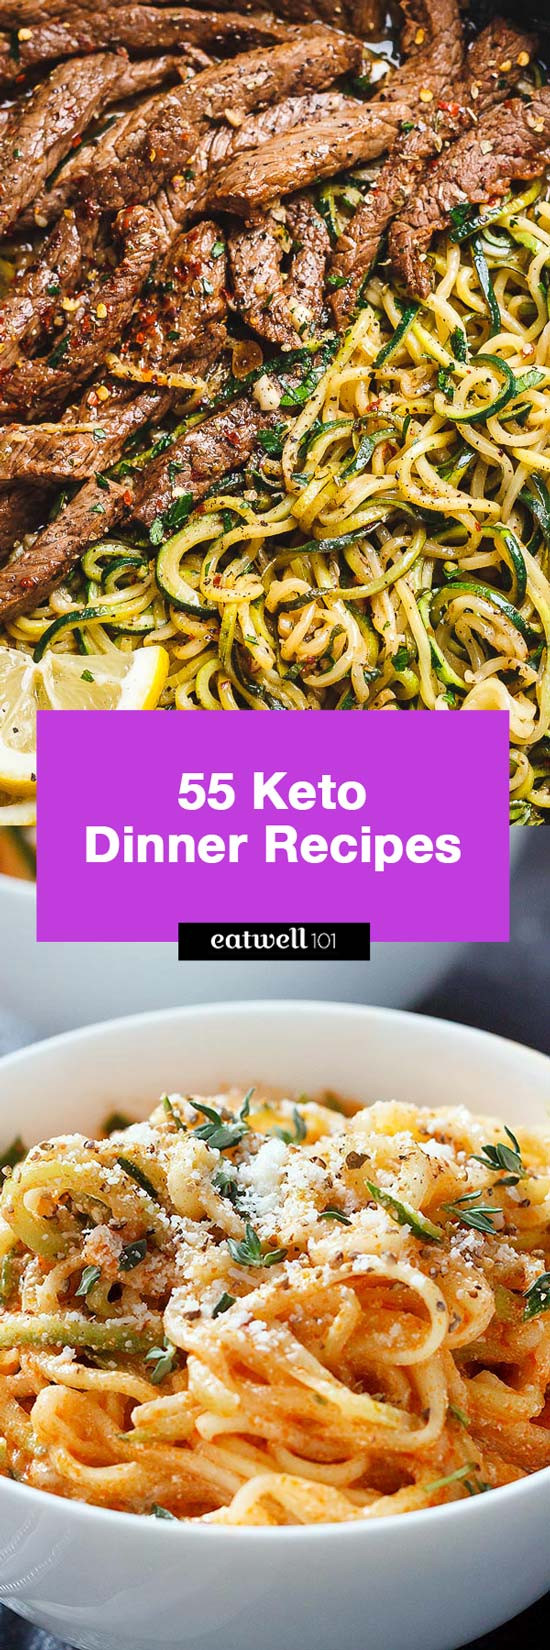 Keto Diet Recipes Dinners Easy
 Easy Keto Dinner Recipes – 90 Quick Keto Dinner ideas for